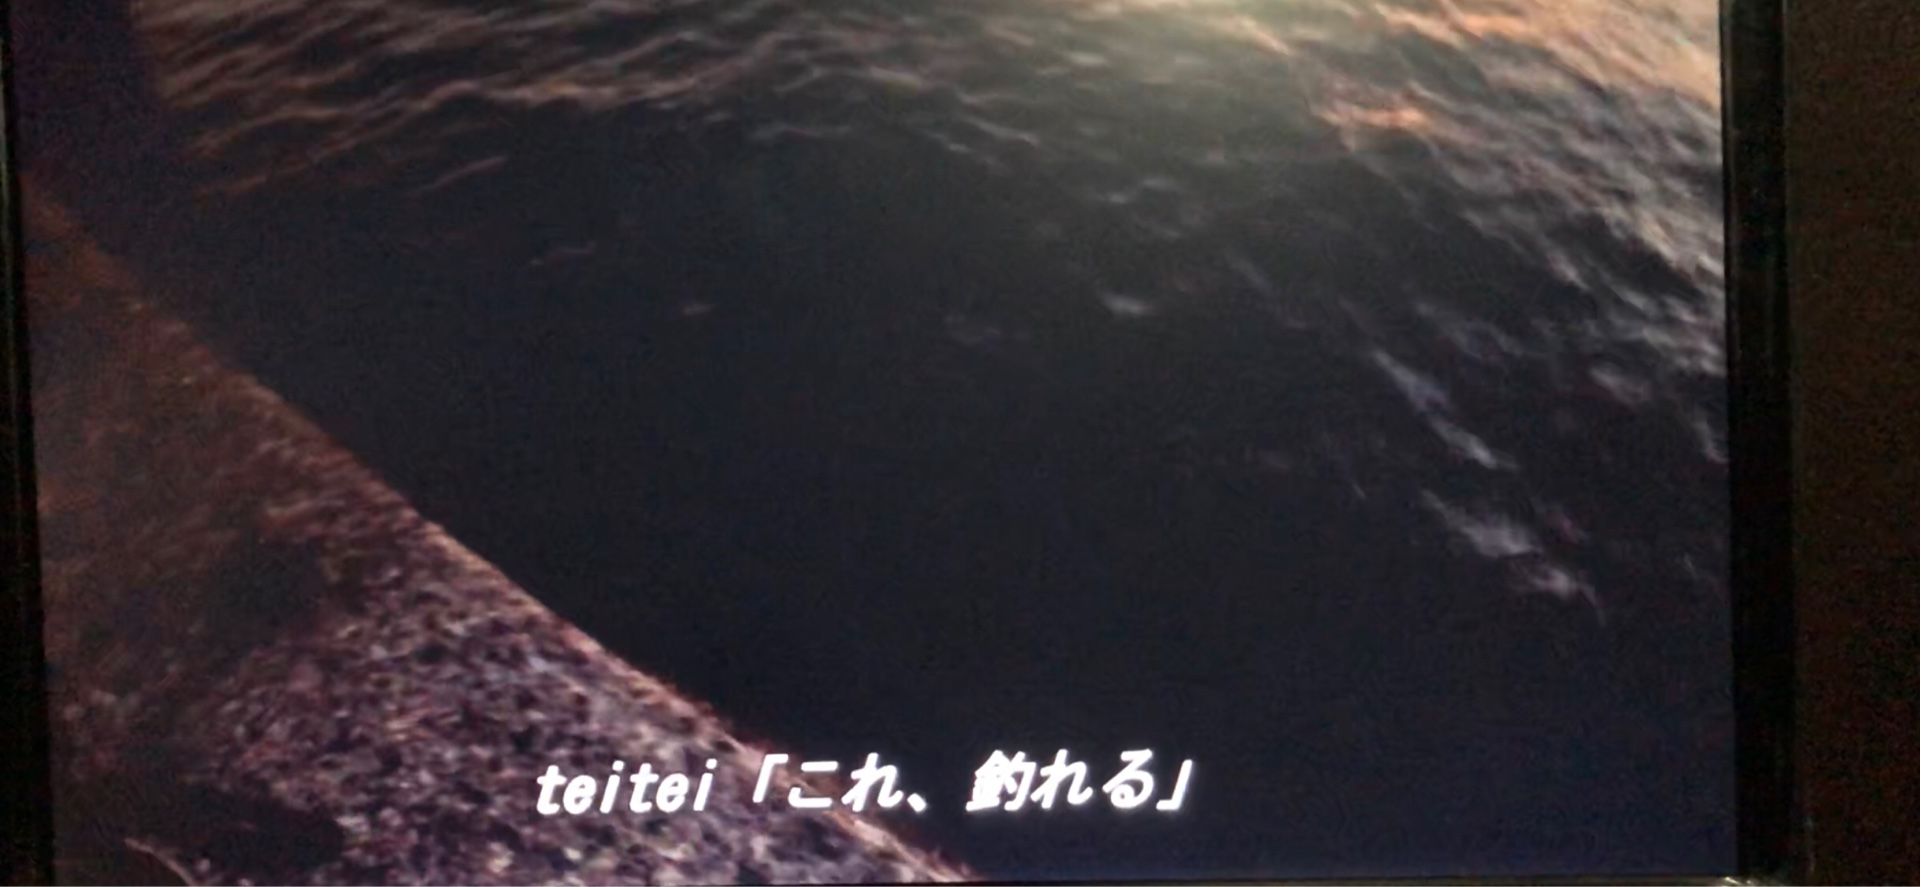 エギング中 潮が変わった Teiteiのエギングブログ 楽天ブログ